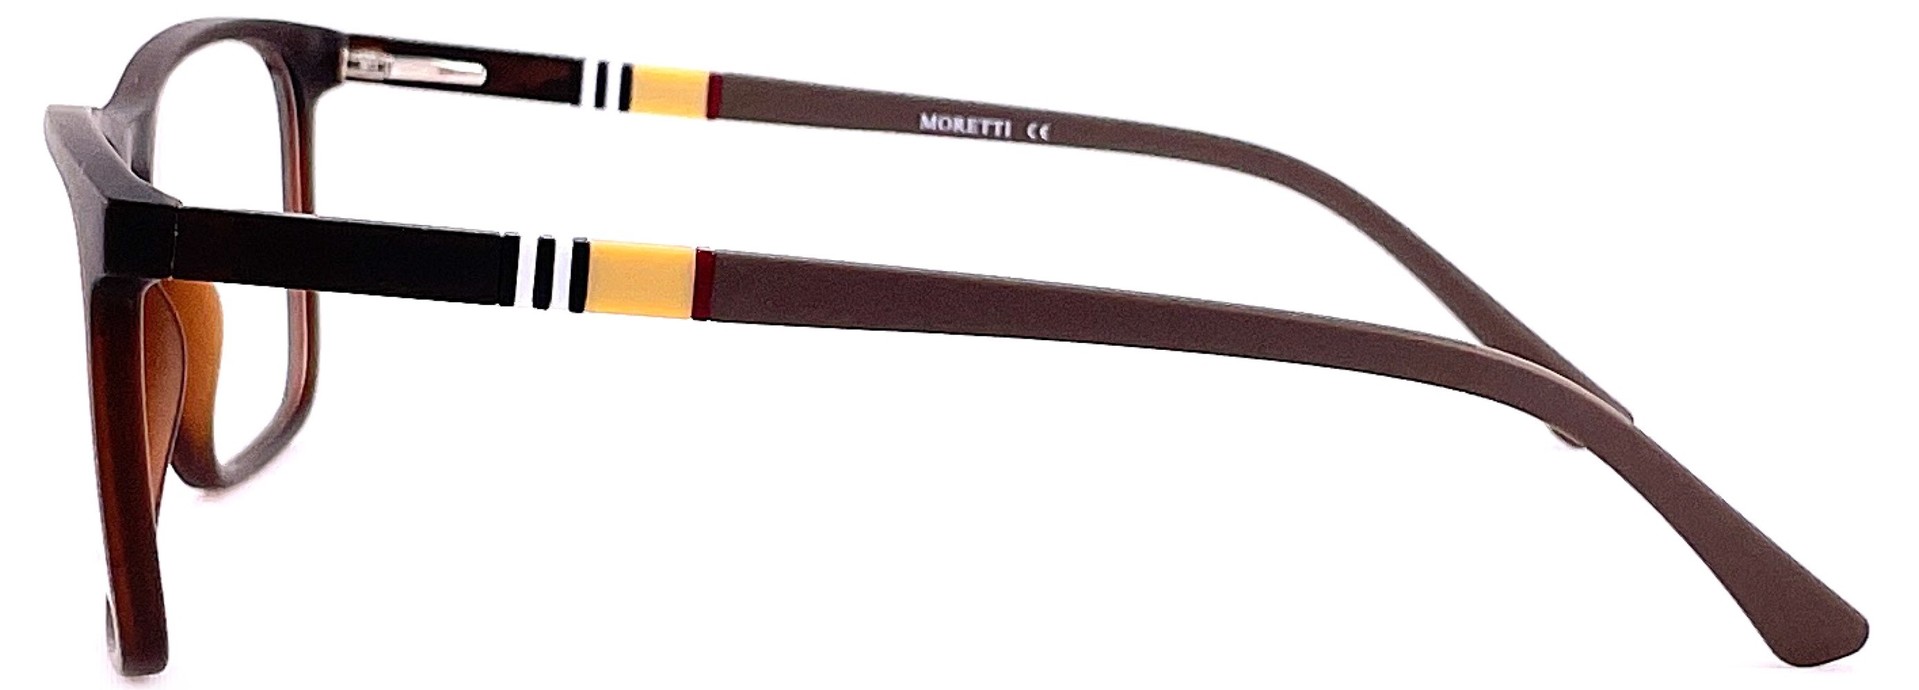 Moretti MF03-05 C.03 3